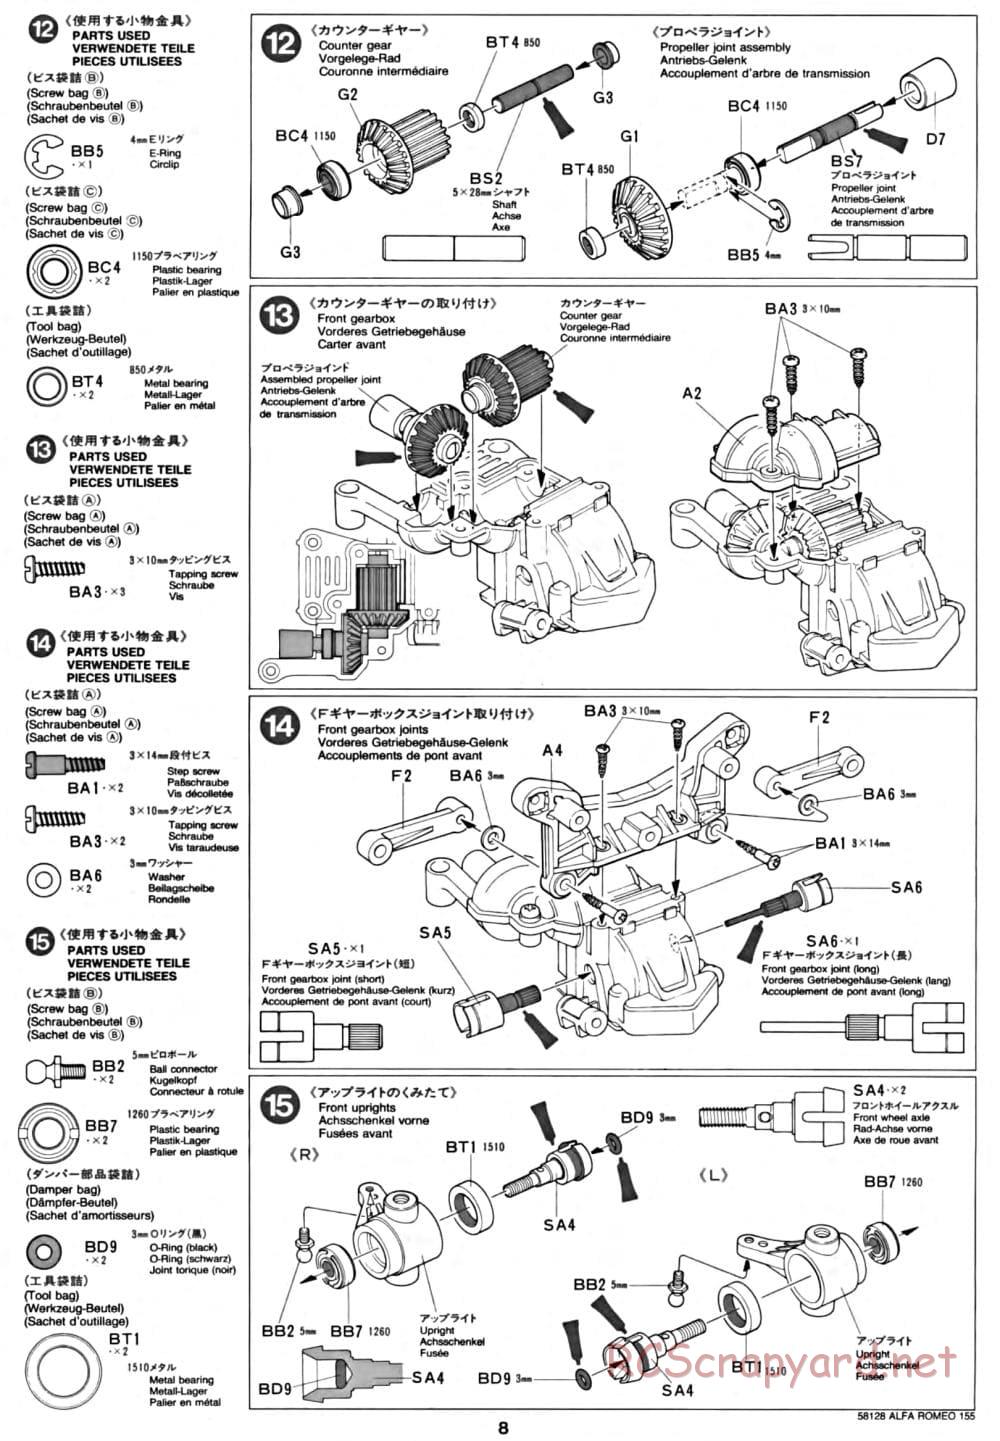 Tamiya - Alfa Romeo 155 V6 TI - TA-02 Chassis - Manual - Page 8